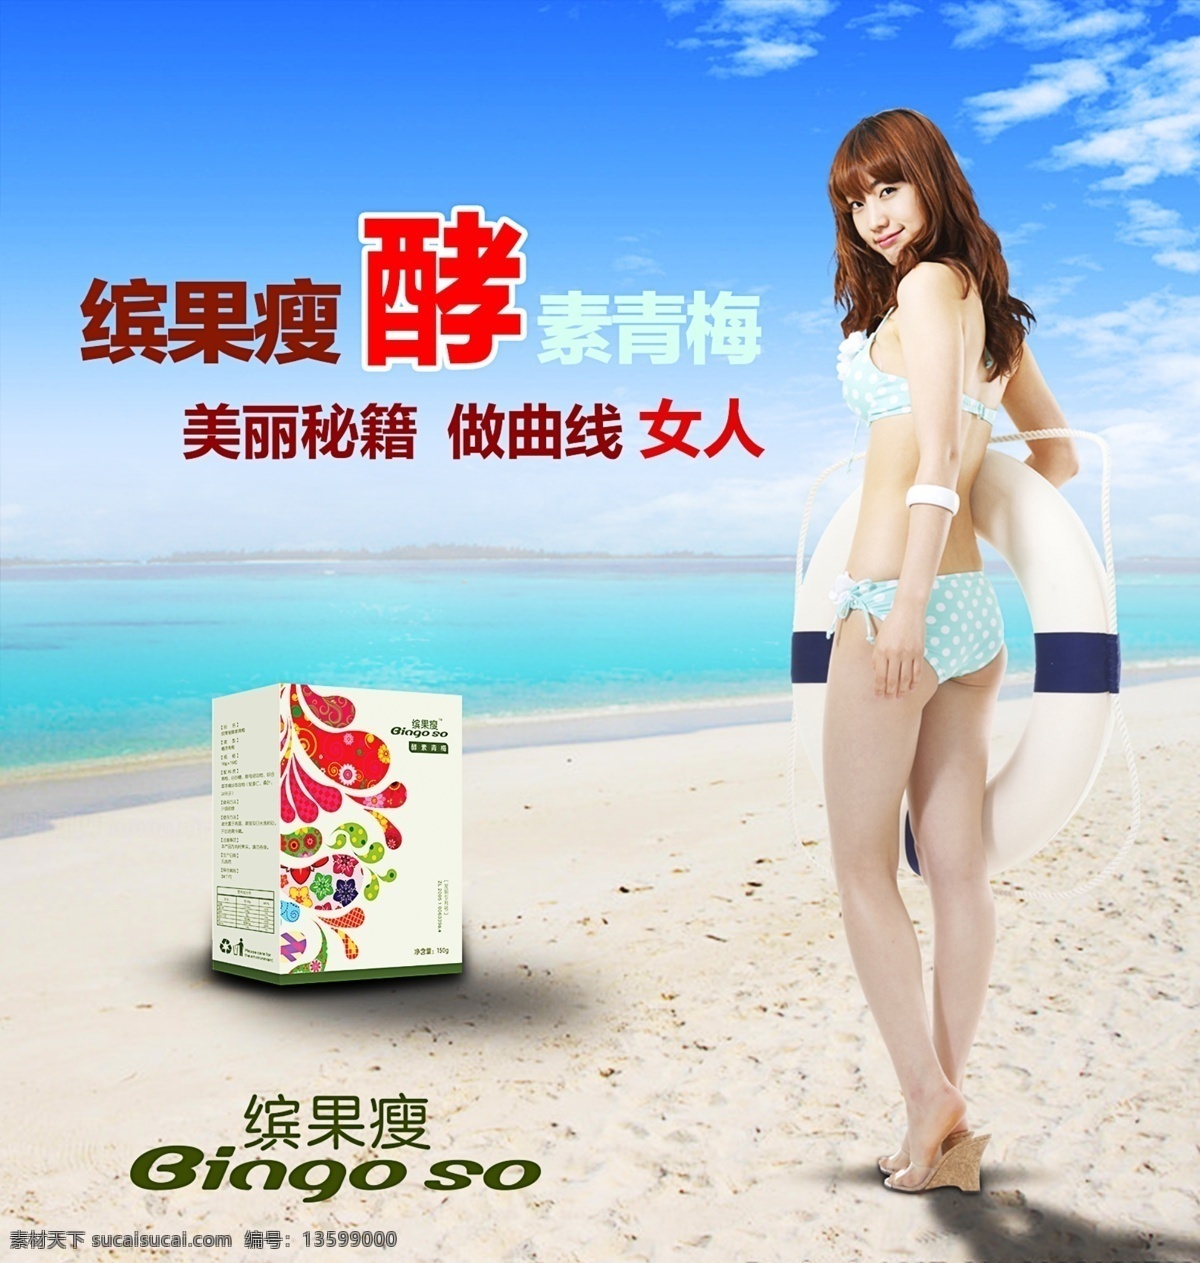 蓝天 白云 大海 沙滩 美女 泳装 减肥 品 广告 白色